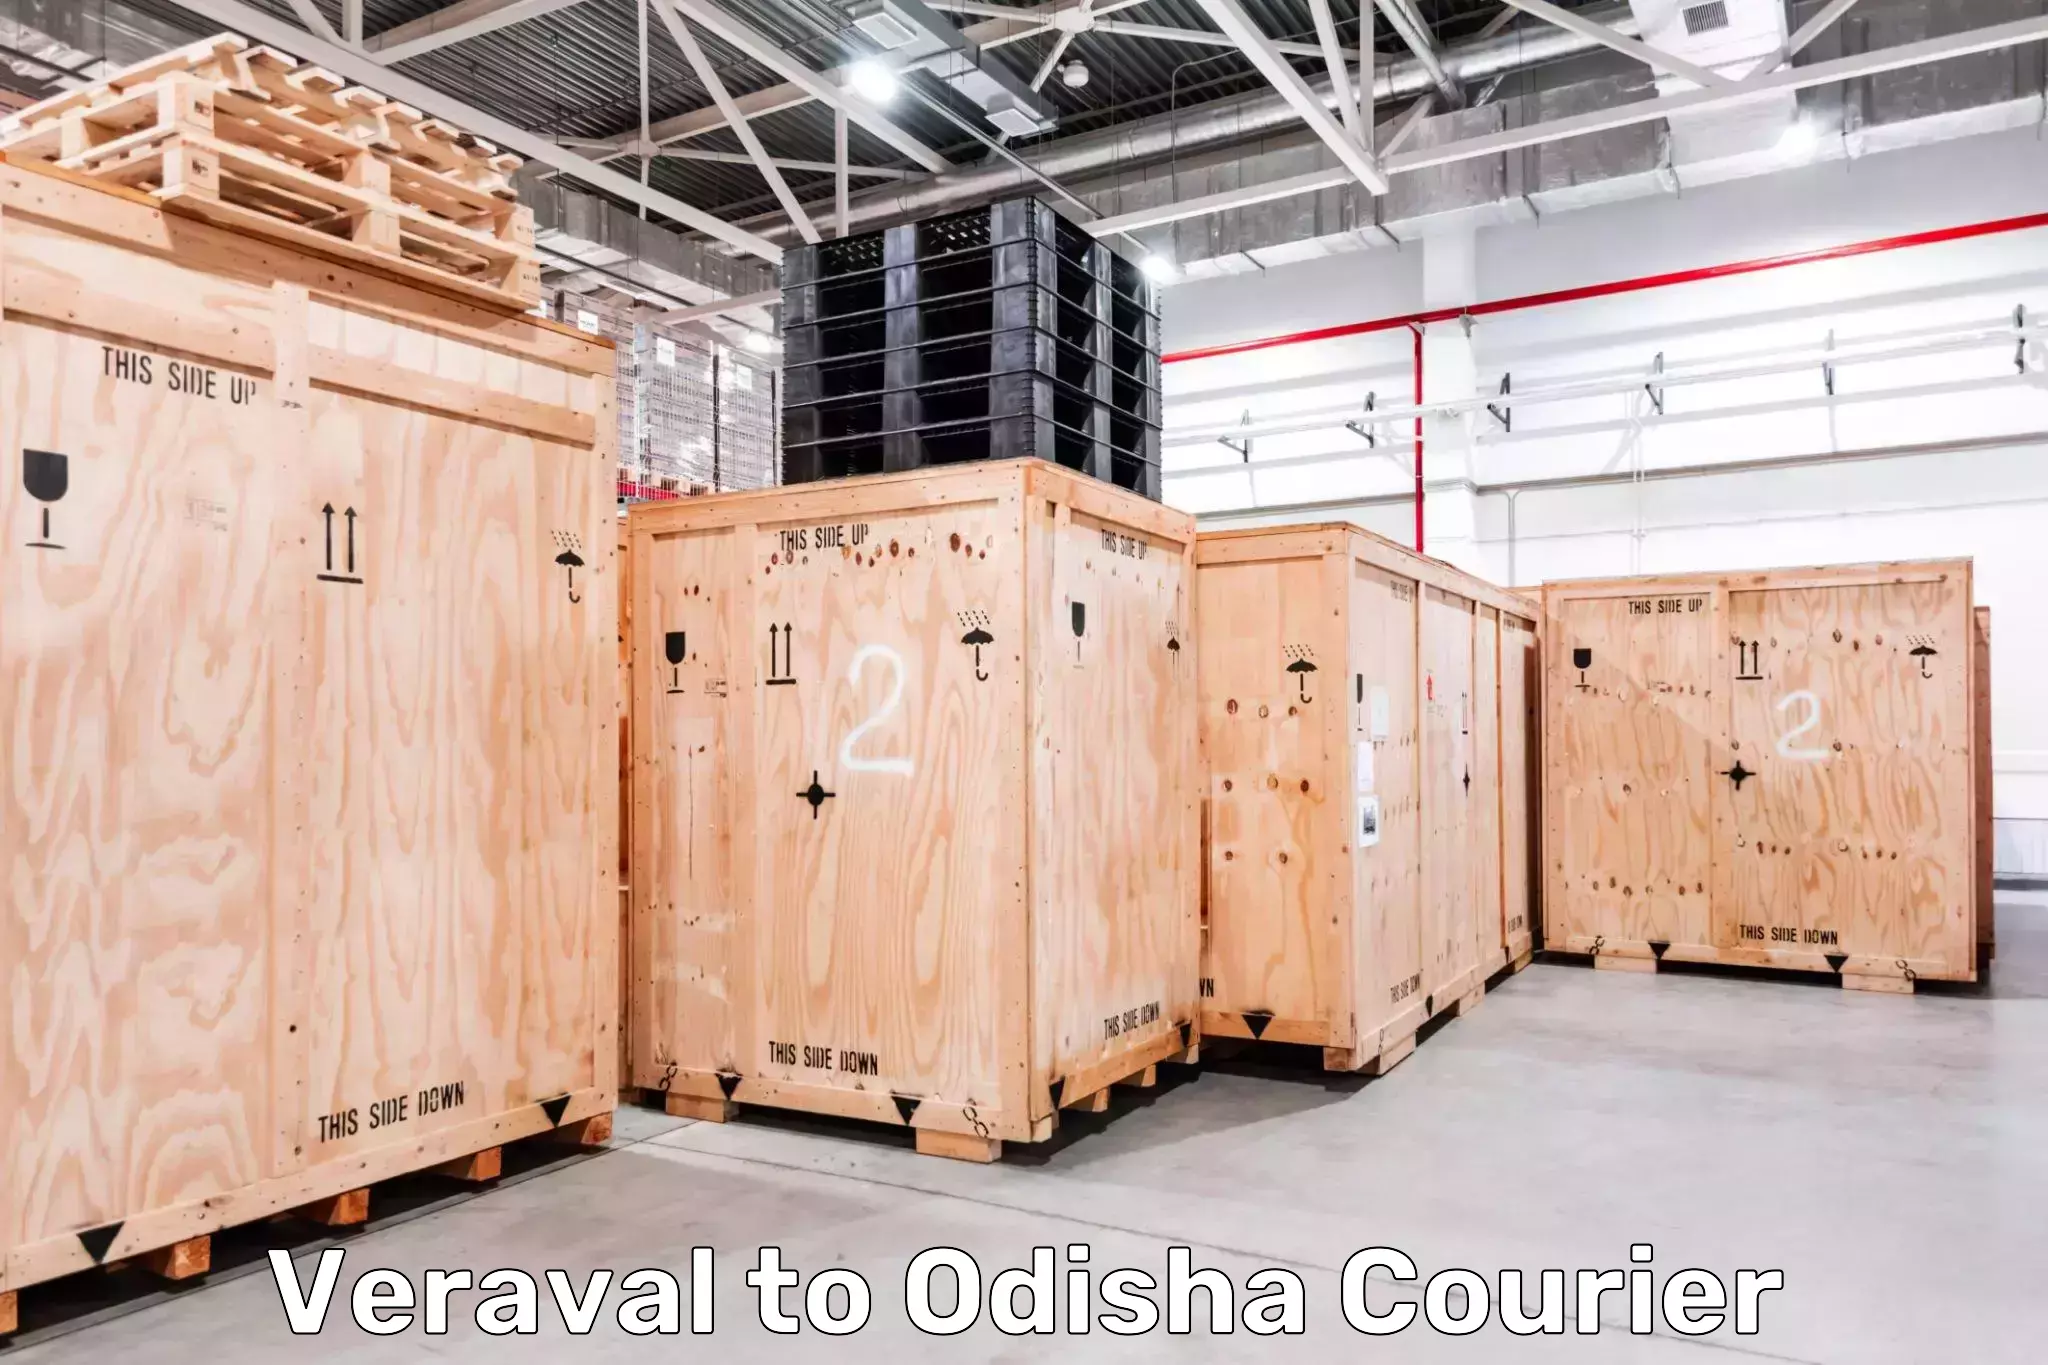 Local delivery service Veraval to Odisha